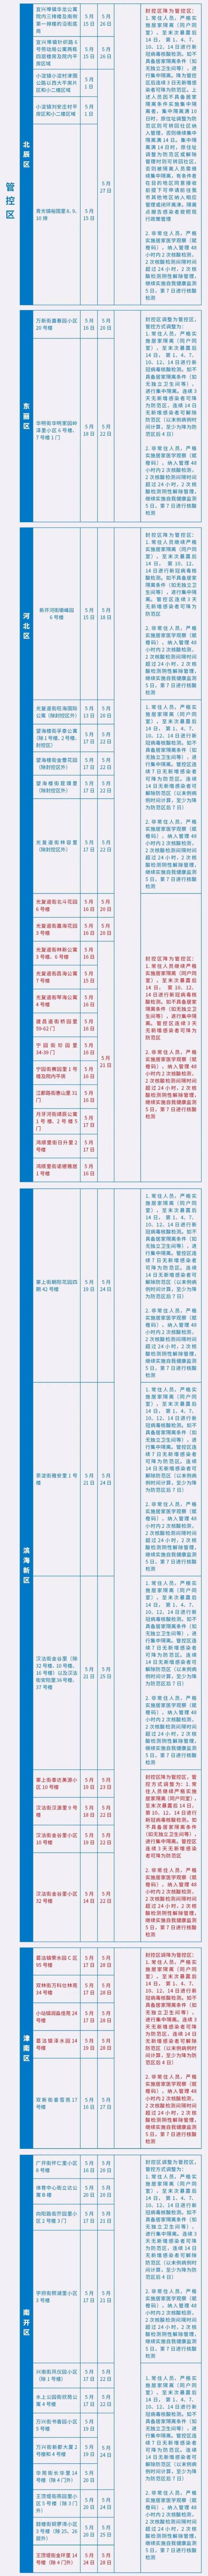 天津最新“三区”范围及对应管理措施公布(截至5.29晚10时)